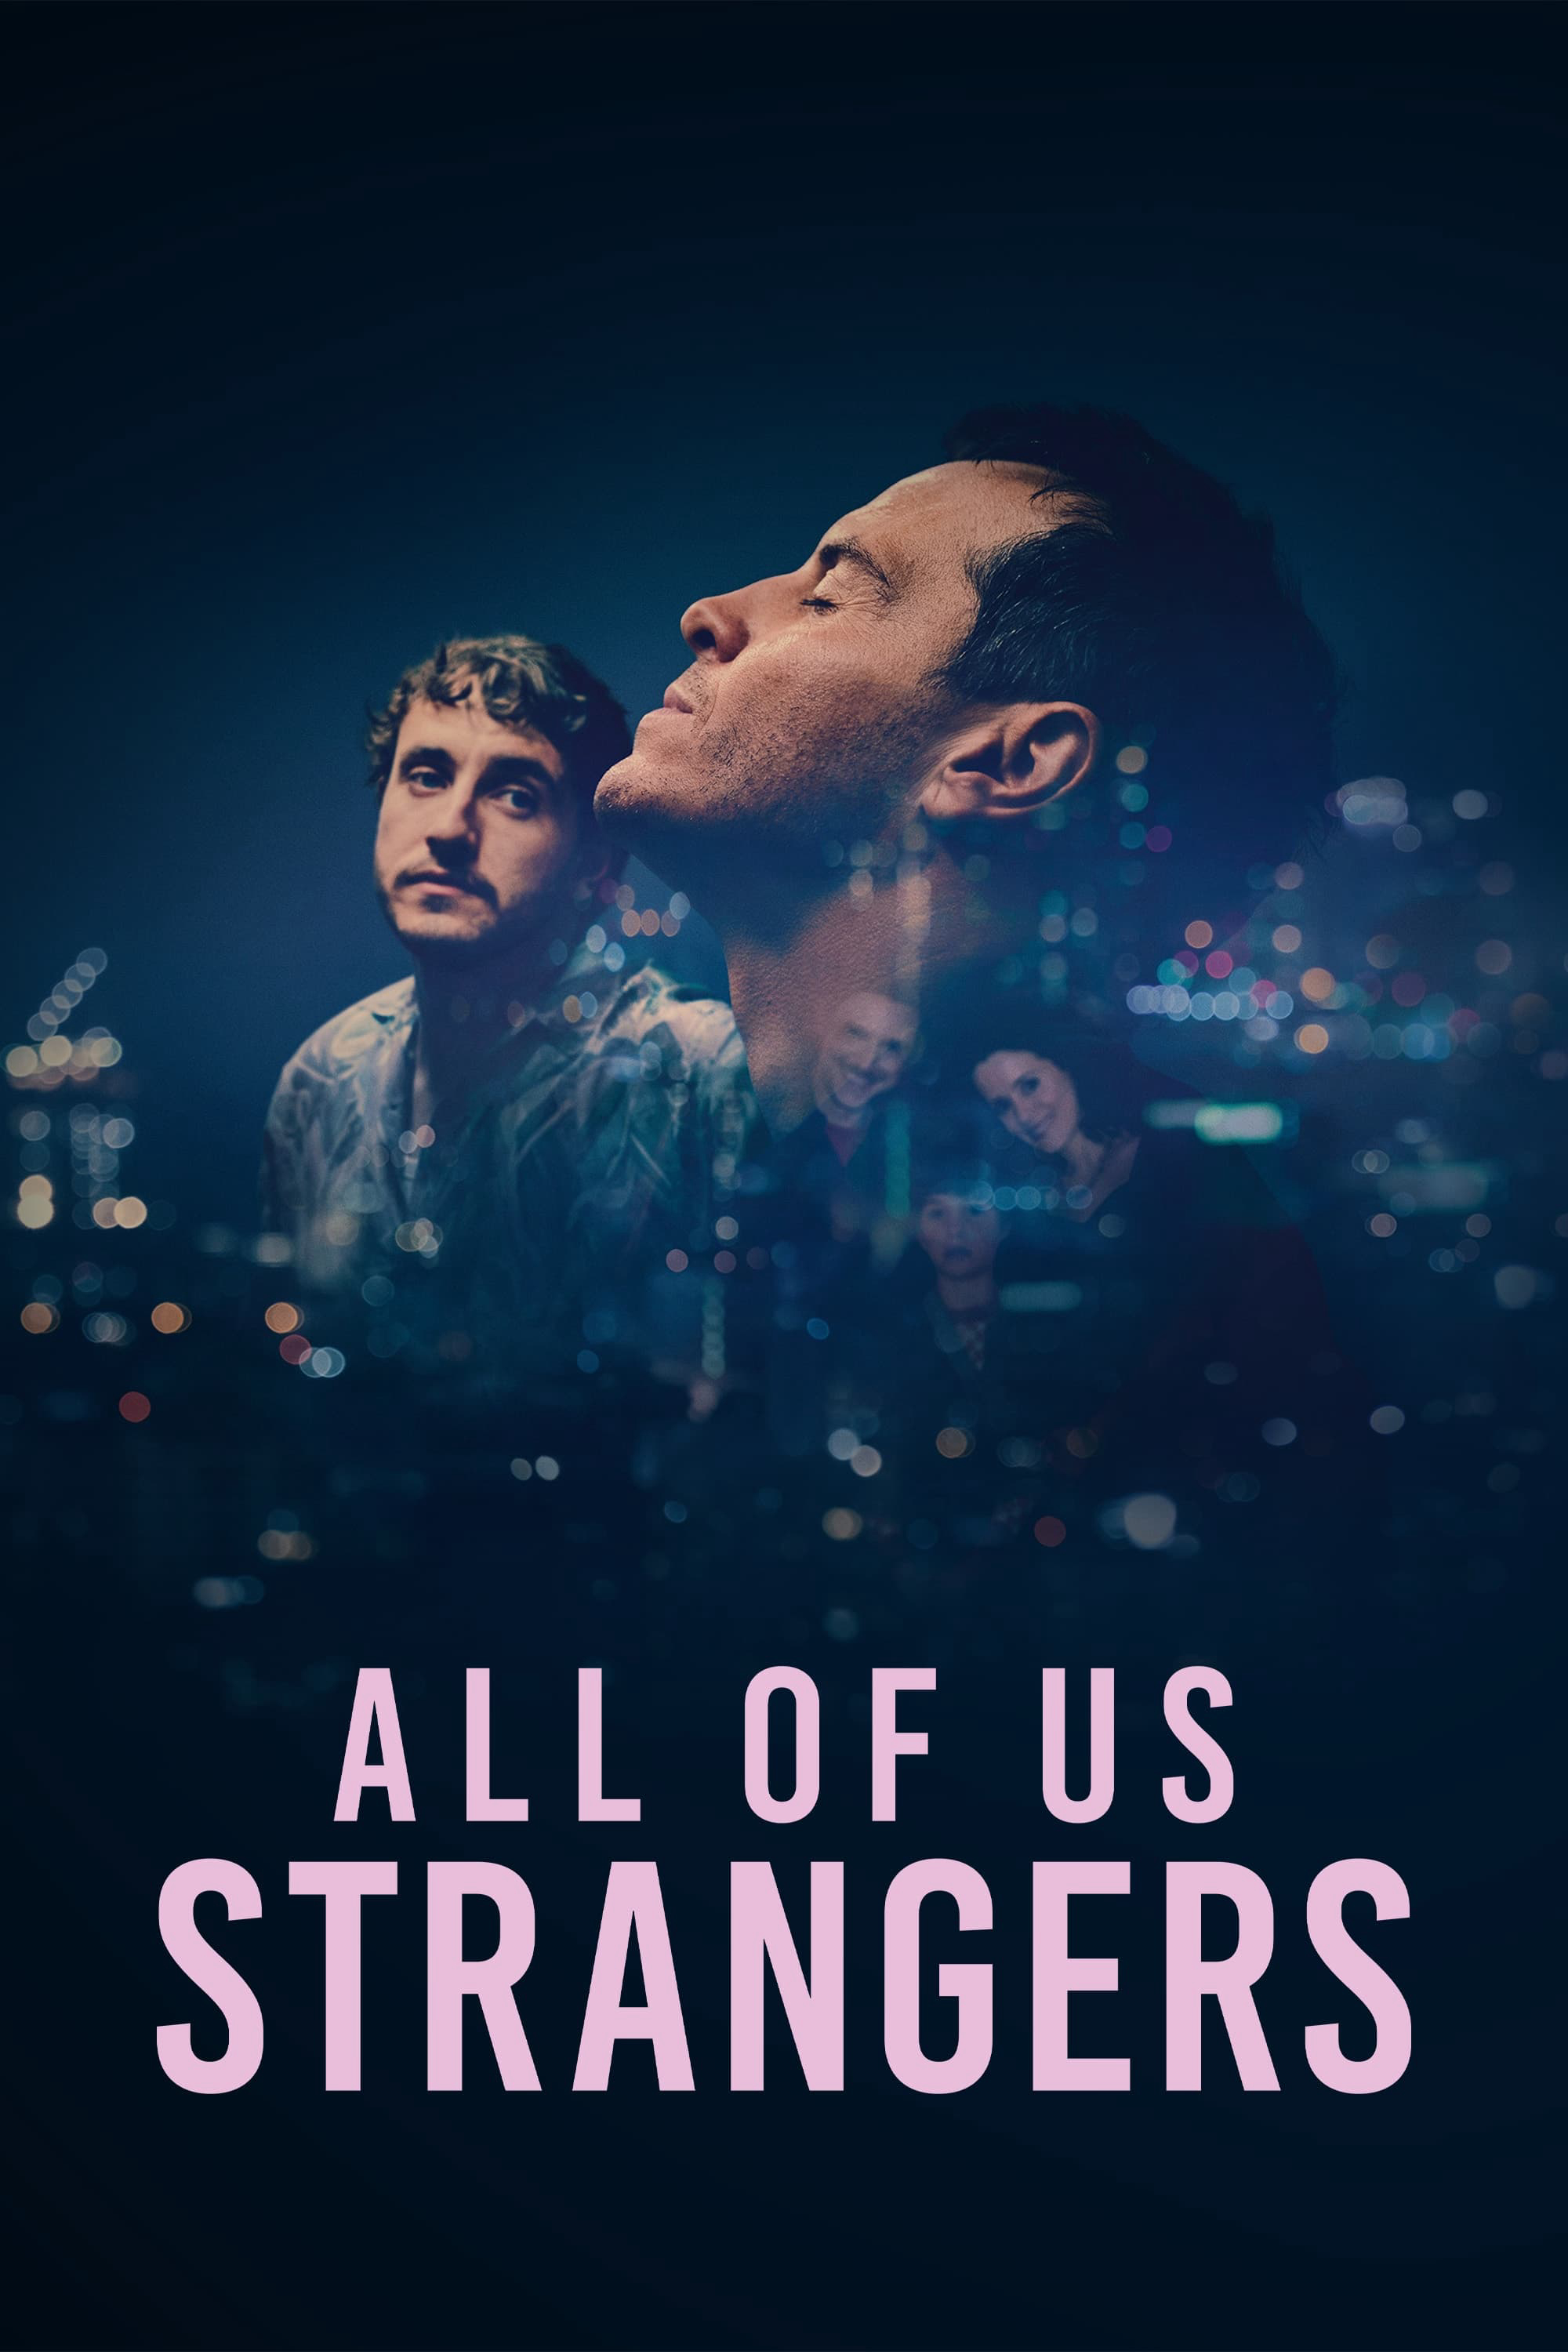 Xem Phim Tất cả chúng ta đều là người lạ (All of Us Strangers)